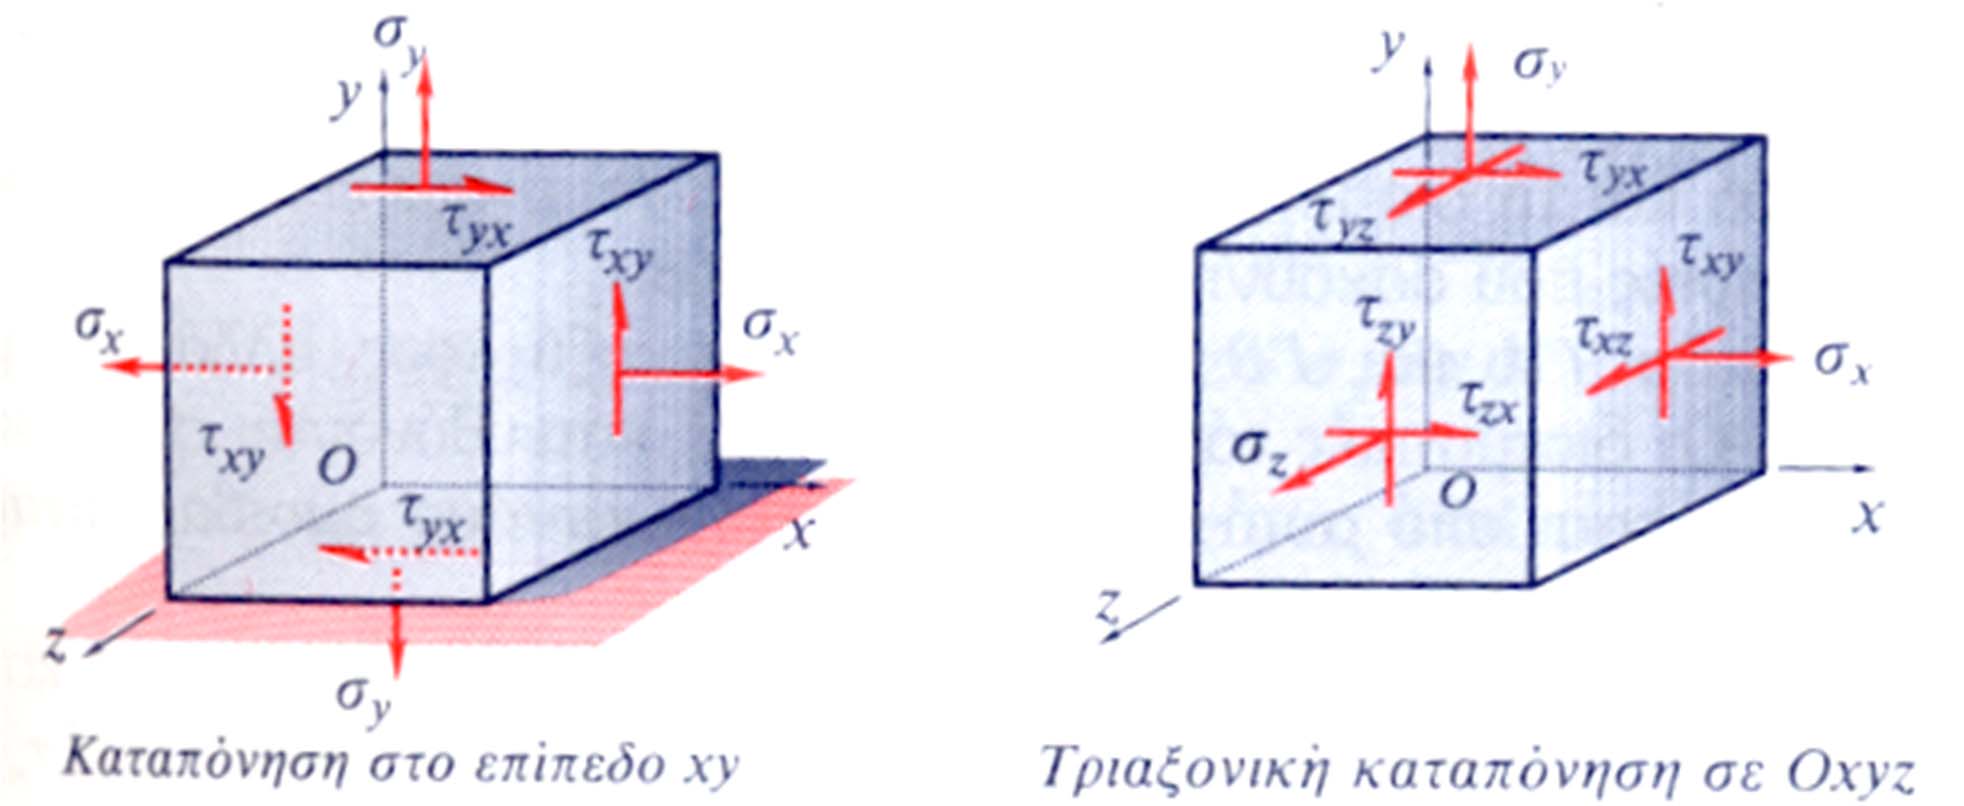 Τάσεις στις 3 διαστάσεις Η έννοια του «απειροελάχιστου κύβου» για την μελέτη των τάσεων/ παραμορφώσεων σε πραγματικά υλικά.